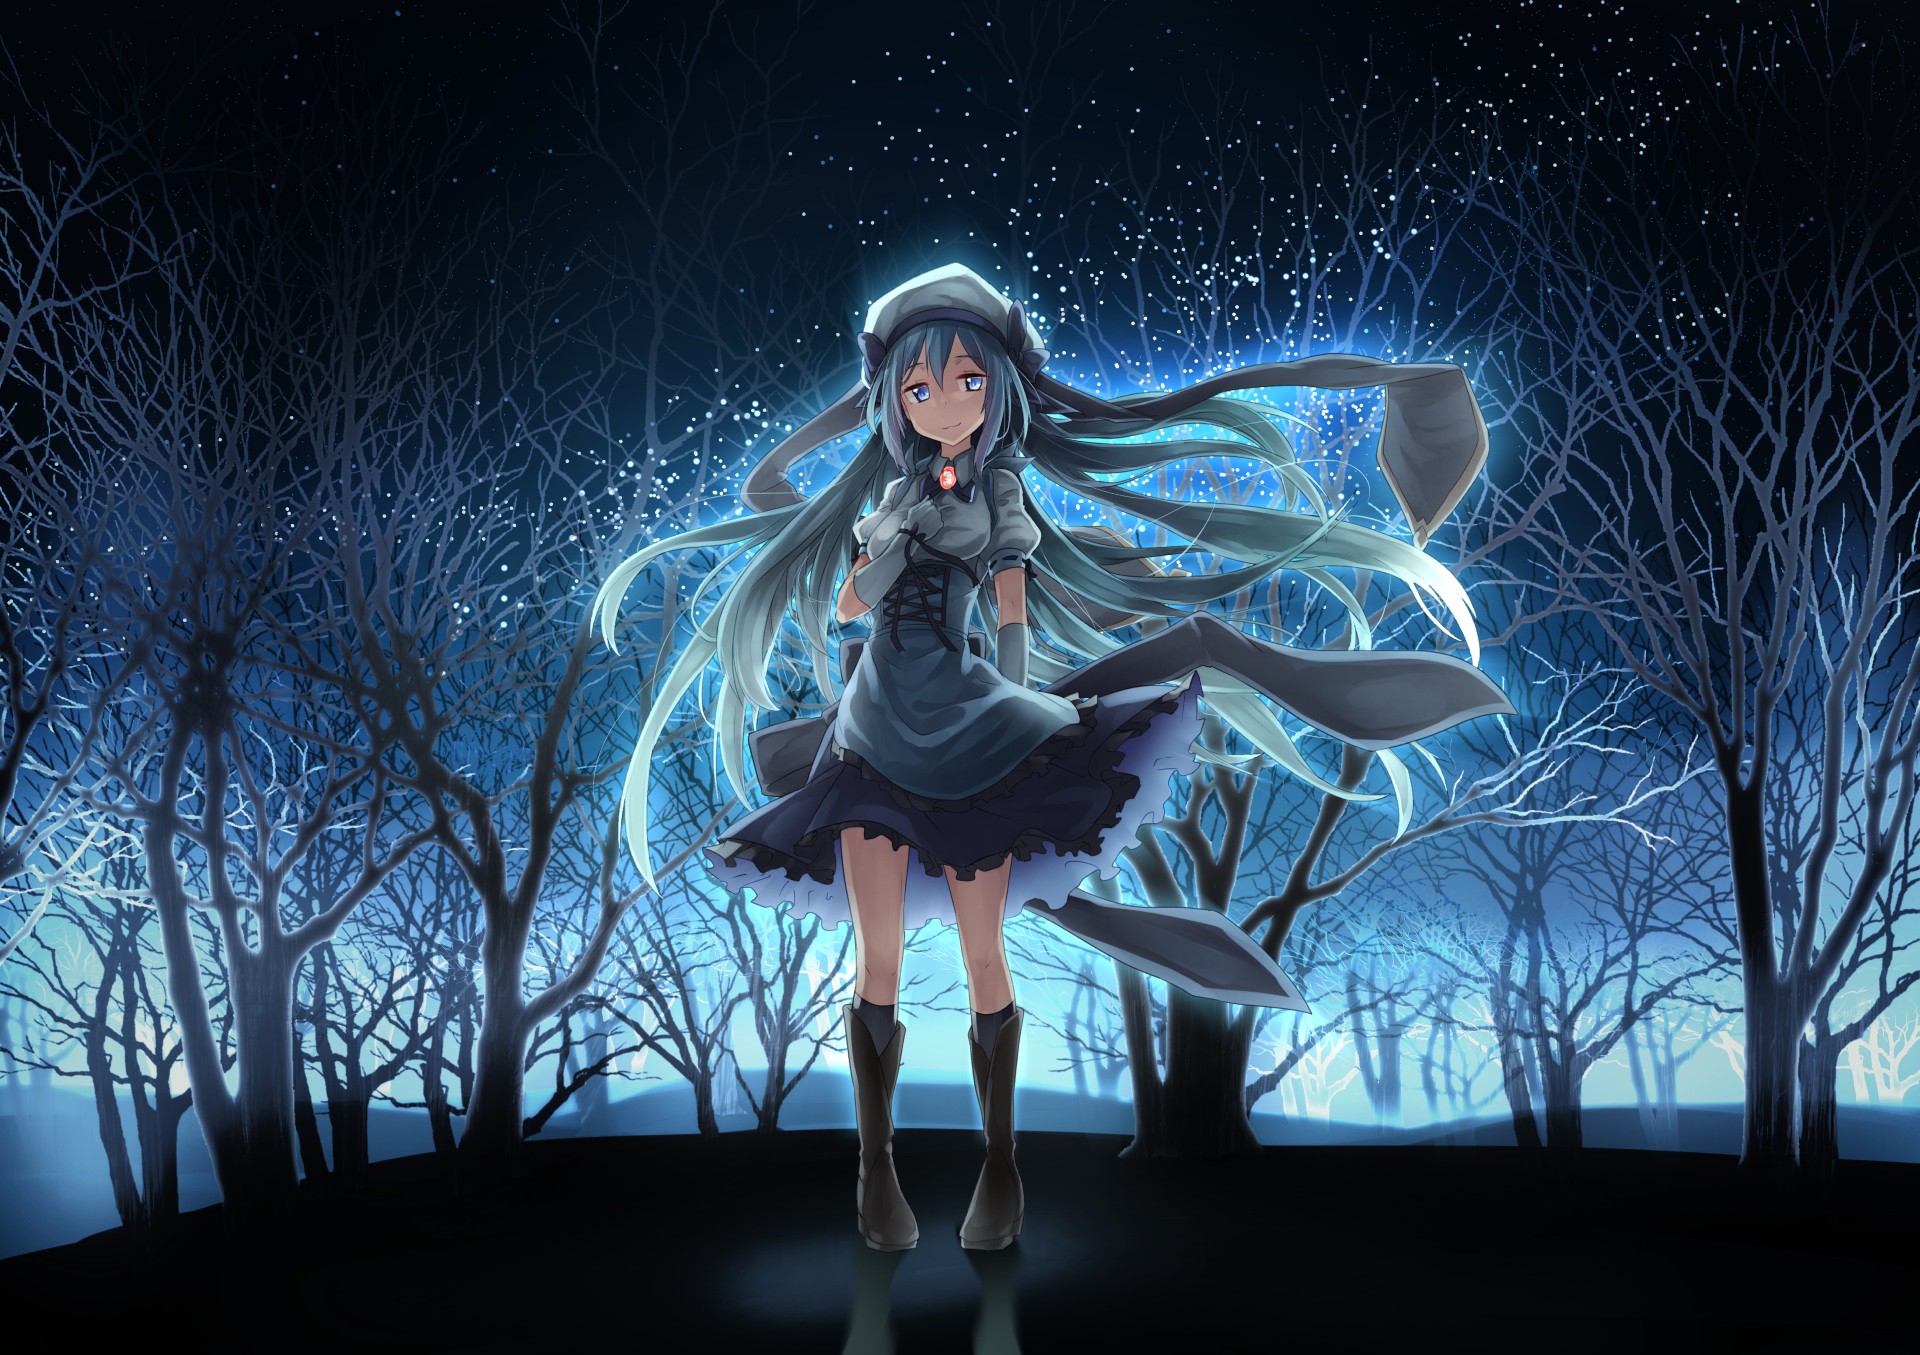 Anime 1920x1355 anime anime girls long hair blue hair blue eyes skirt night stars knee-highs forest trees